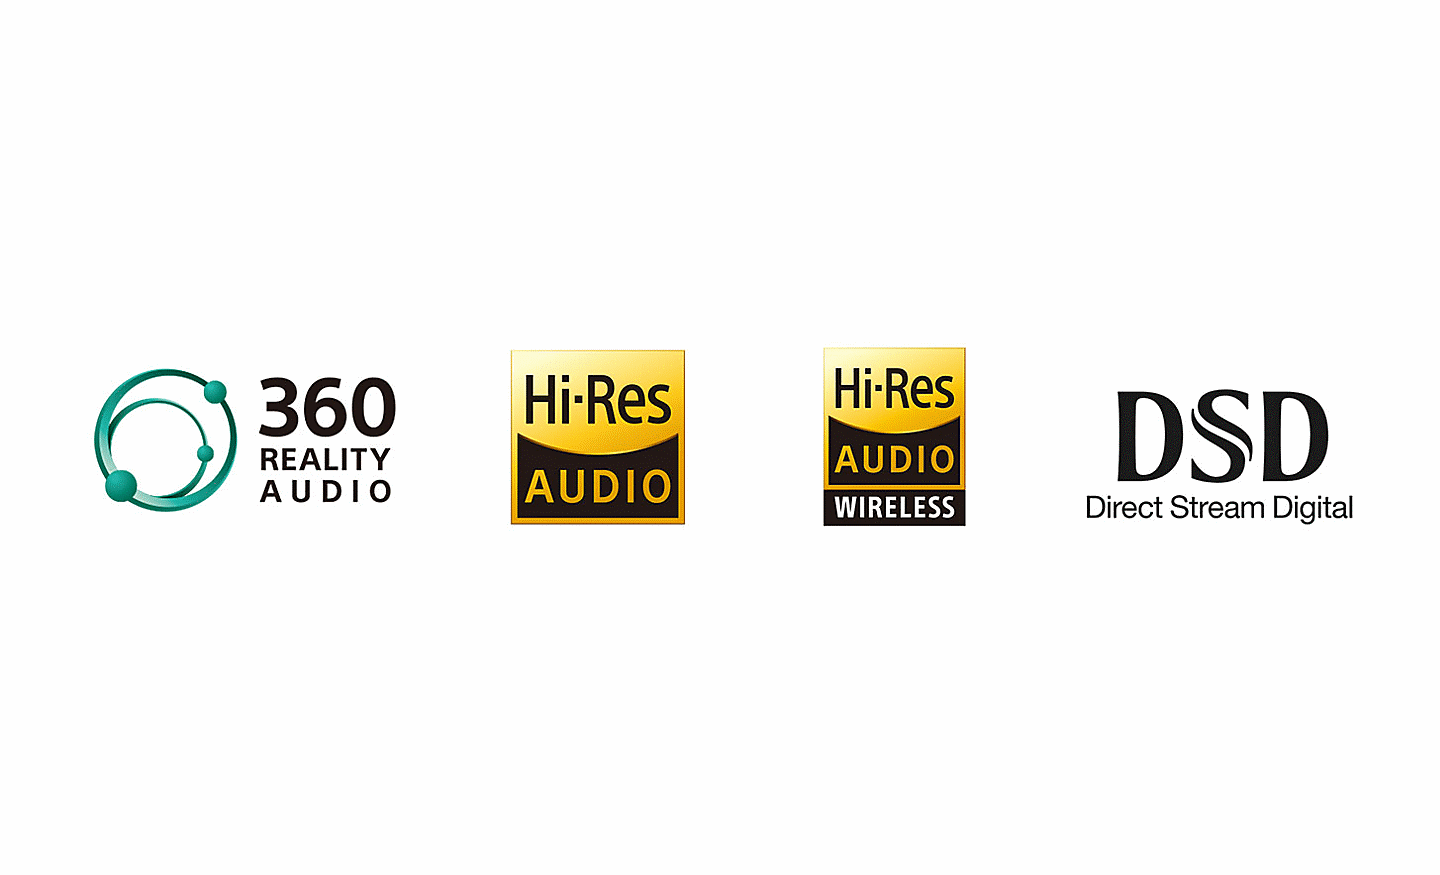 Logos de 360 Reality Audio, Hi-Res Audio, Hi-Res Audio Wireless y DSD Direct Stream Digital